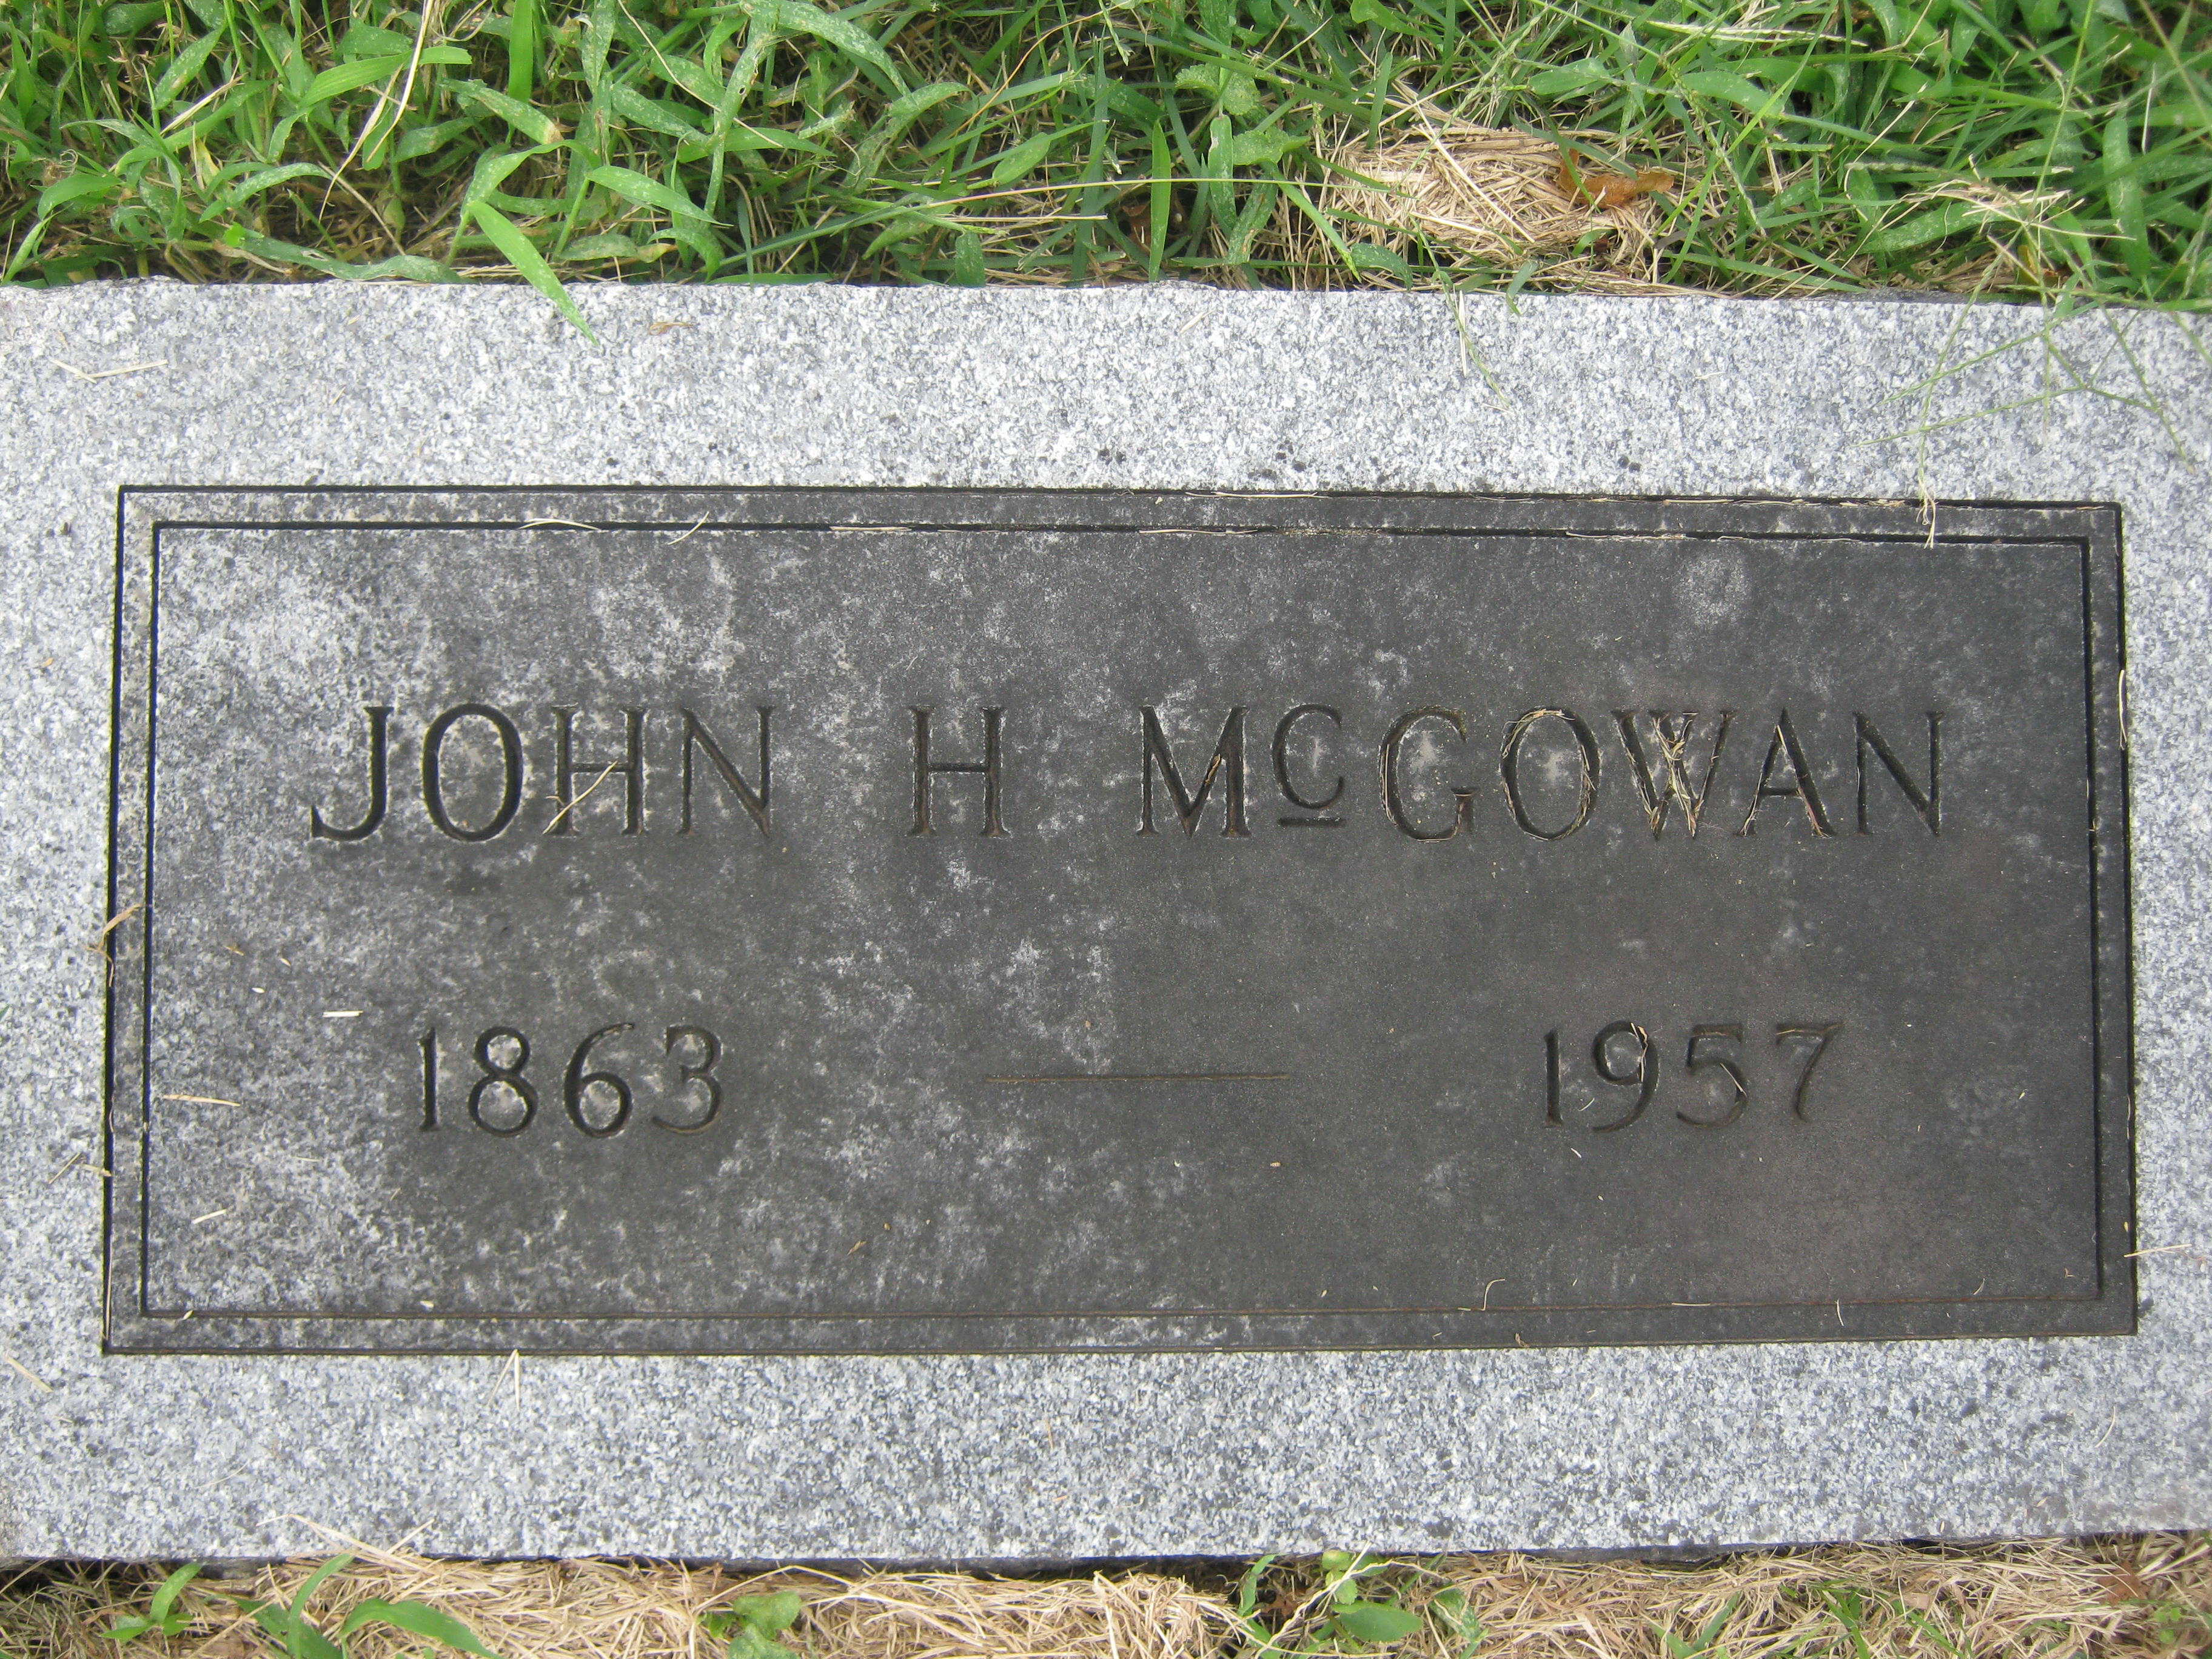 John Henry McGowan HS